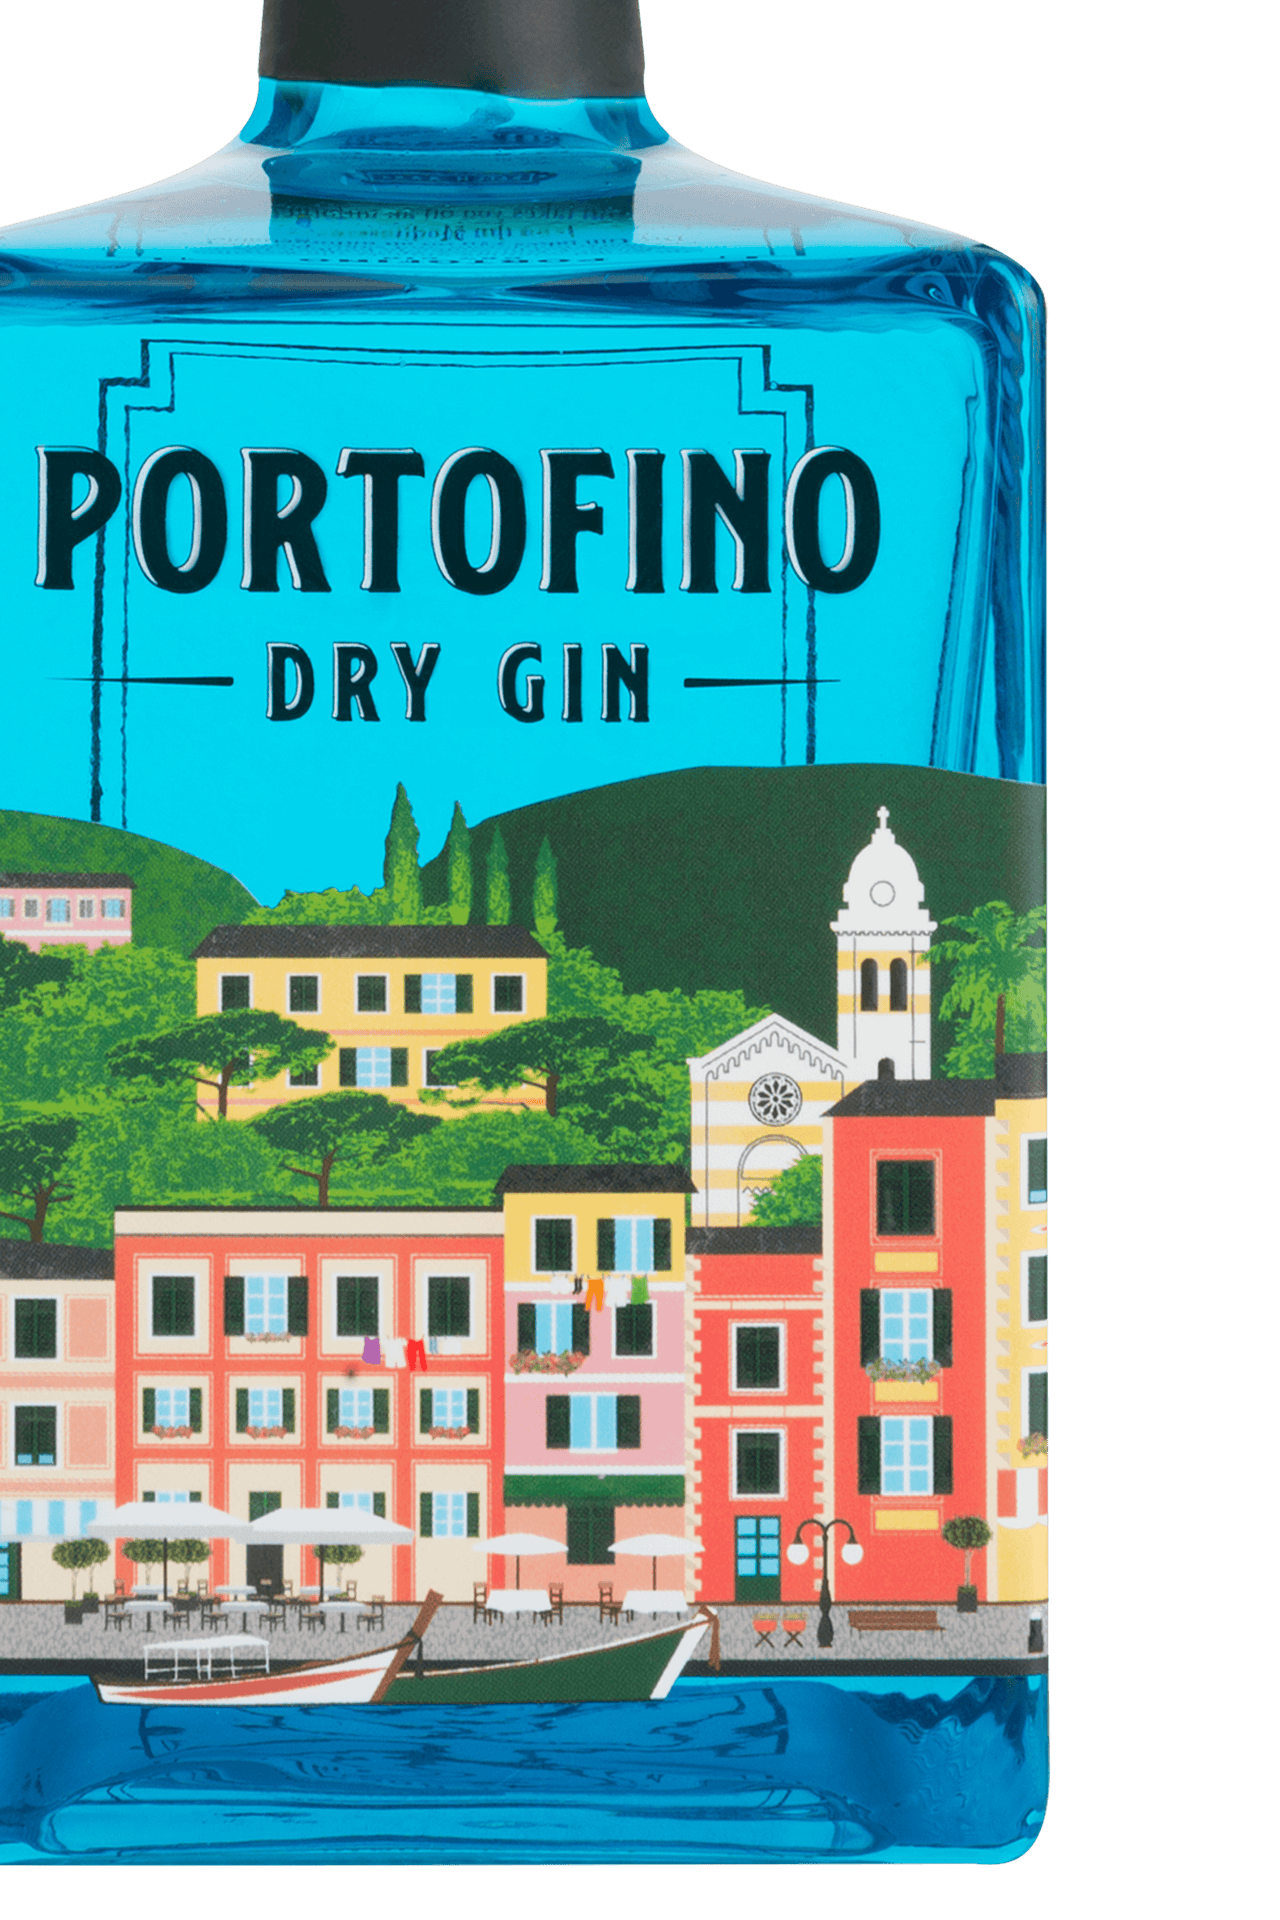 PORTOFINO DRY GIN 6x500ml - Portofino Dry Gin